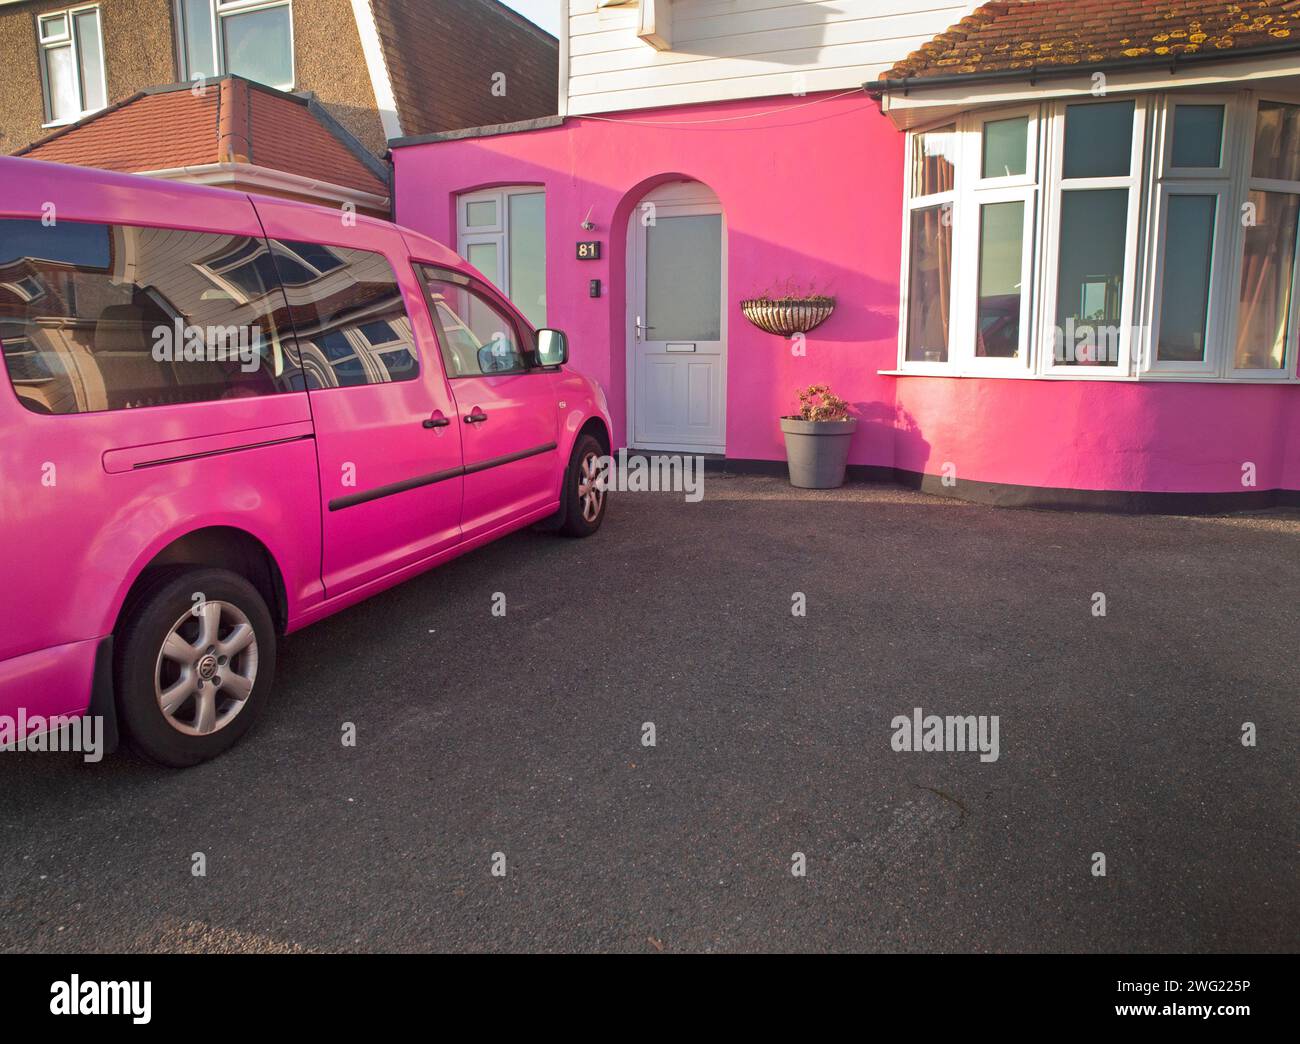 Une voiture rose garée devant une maison rose Banque D'Images